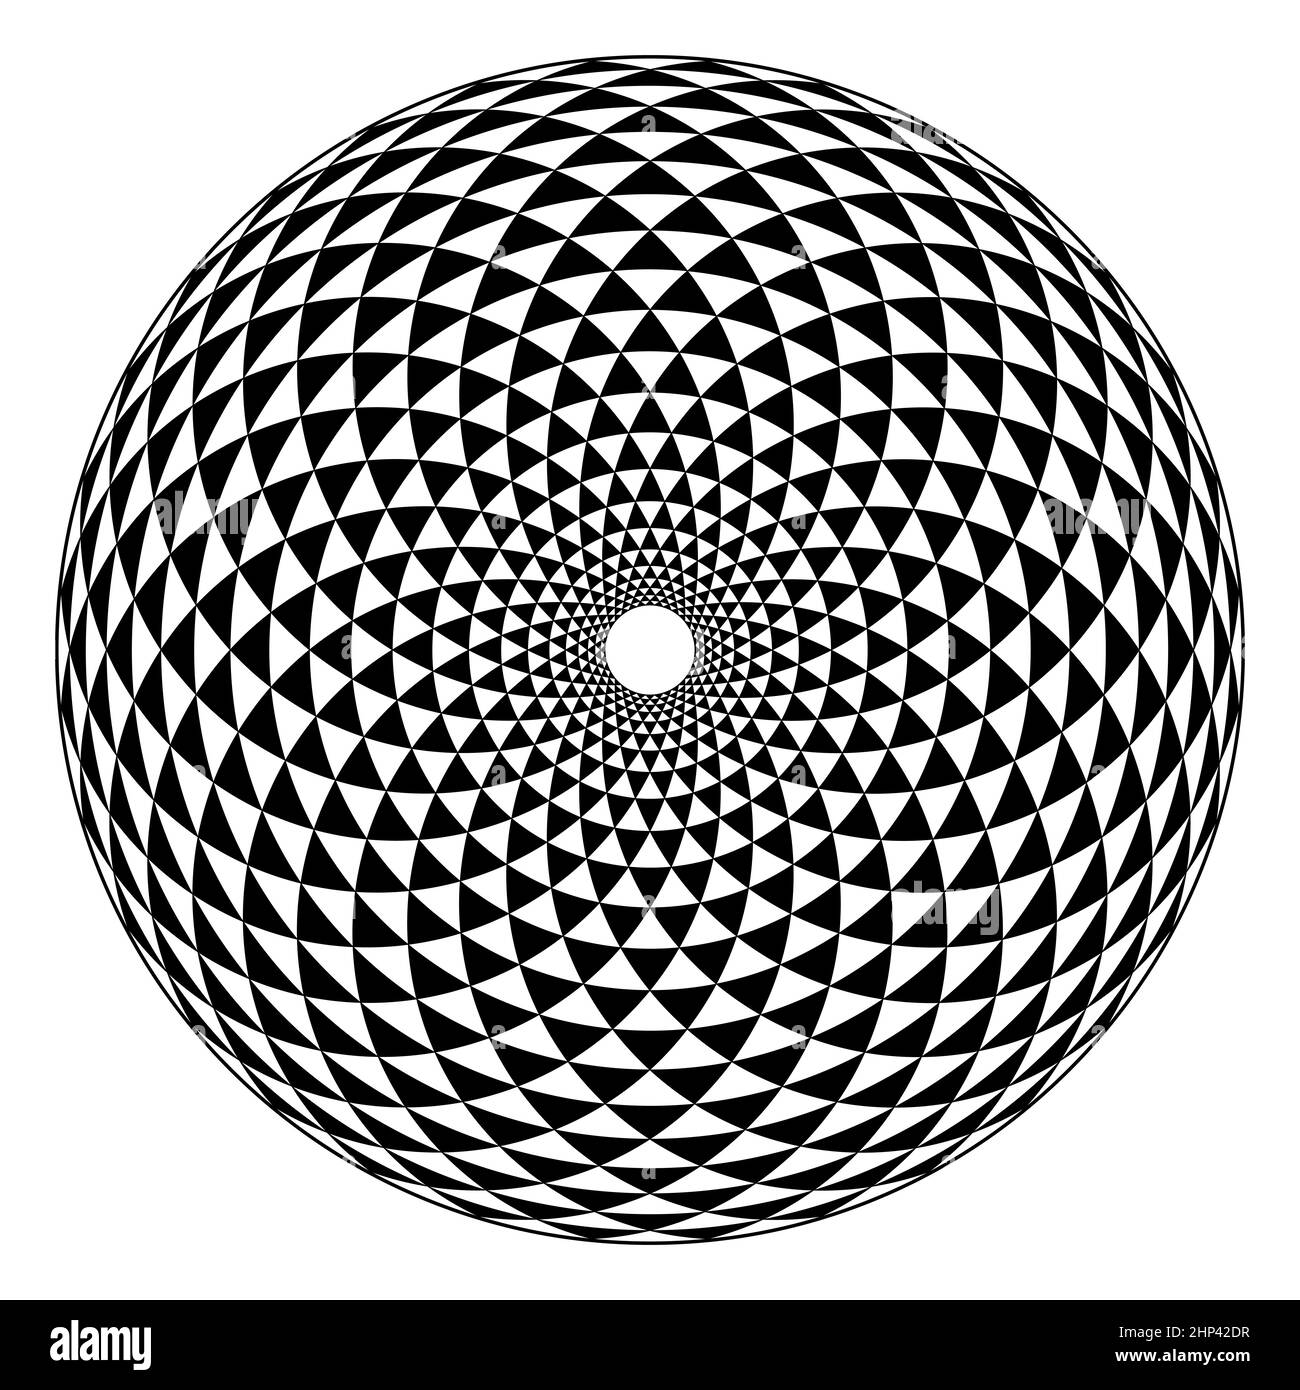 Modello Fibonacci, cerchio a scacchi a triangolo bianco e nero, formato da archi, disposti a spirale, attraversati da cerchi, creando triangoli di piegatura. Foto Stock